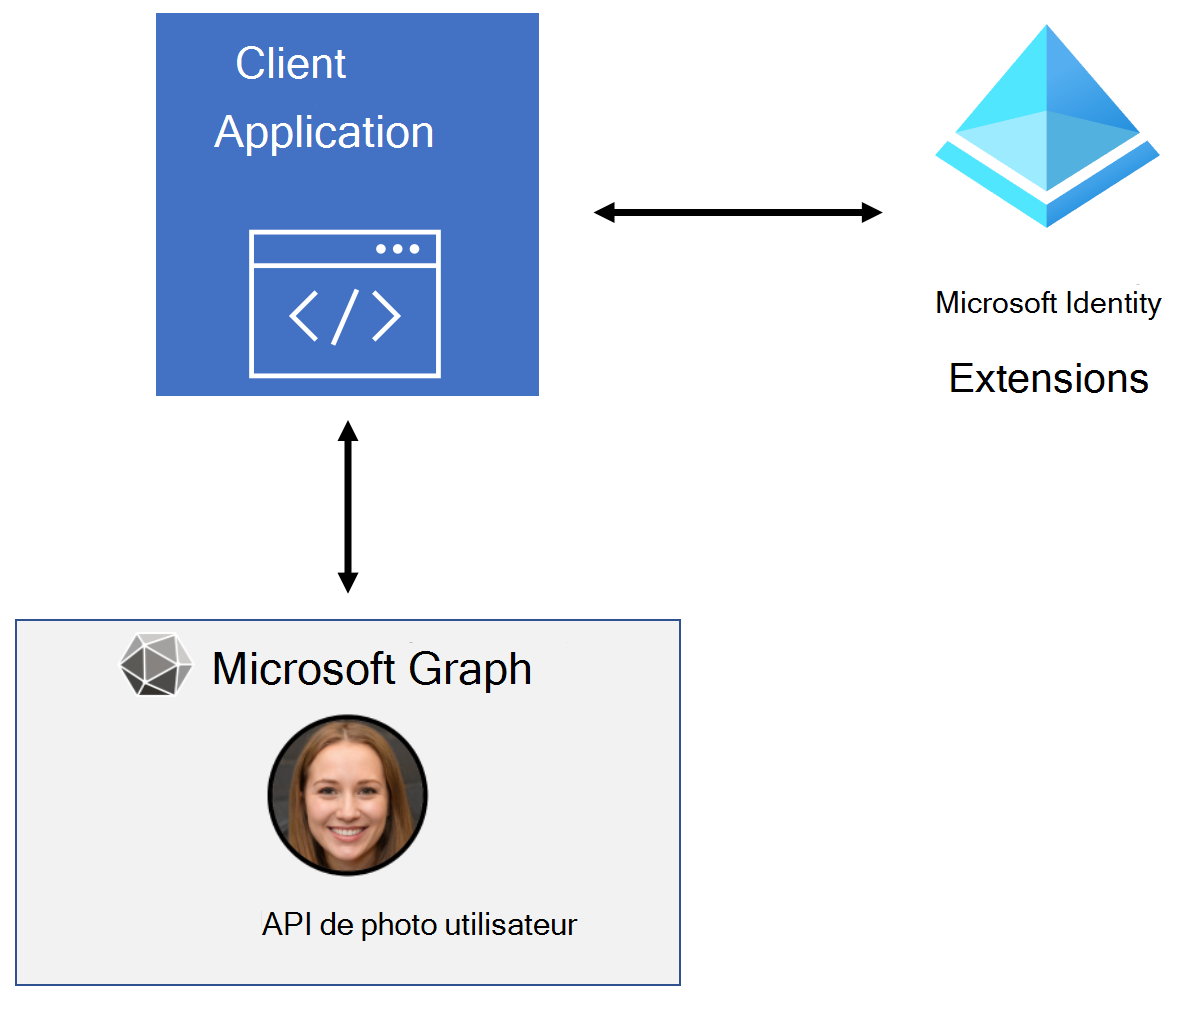 Diagramme du flux d’applications entre Azure Active Directory et Microsoft Graph pour récupérer une photo d’utilisateur.